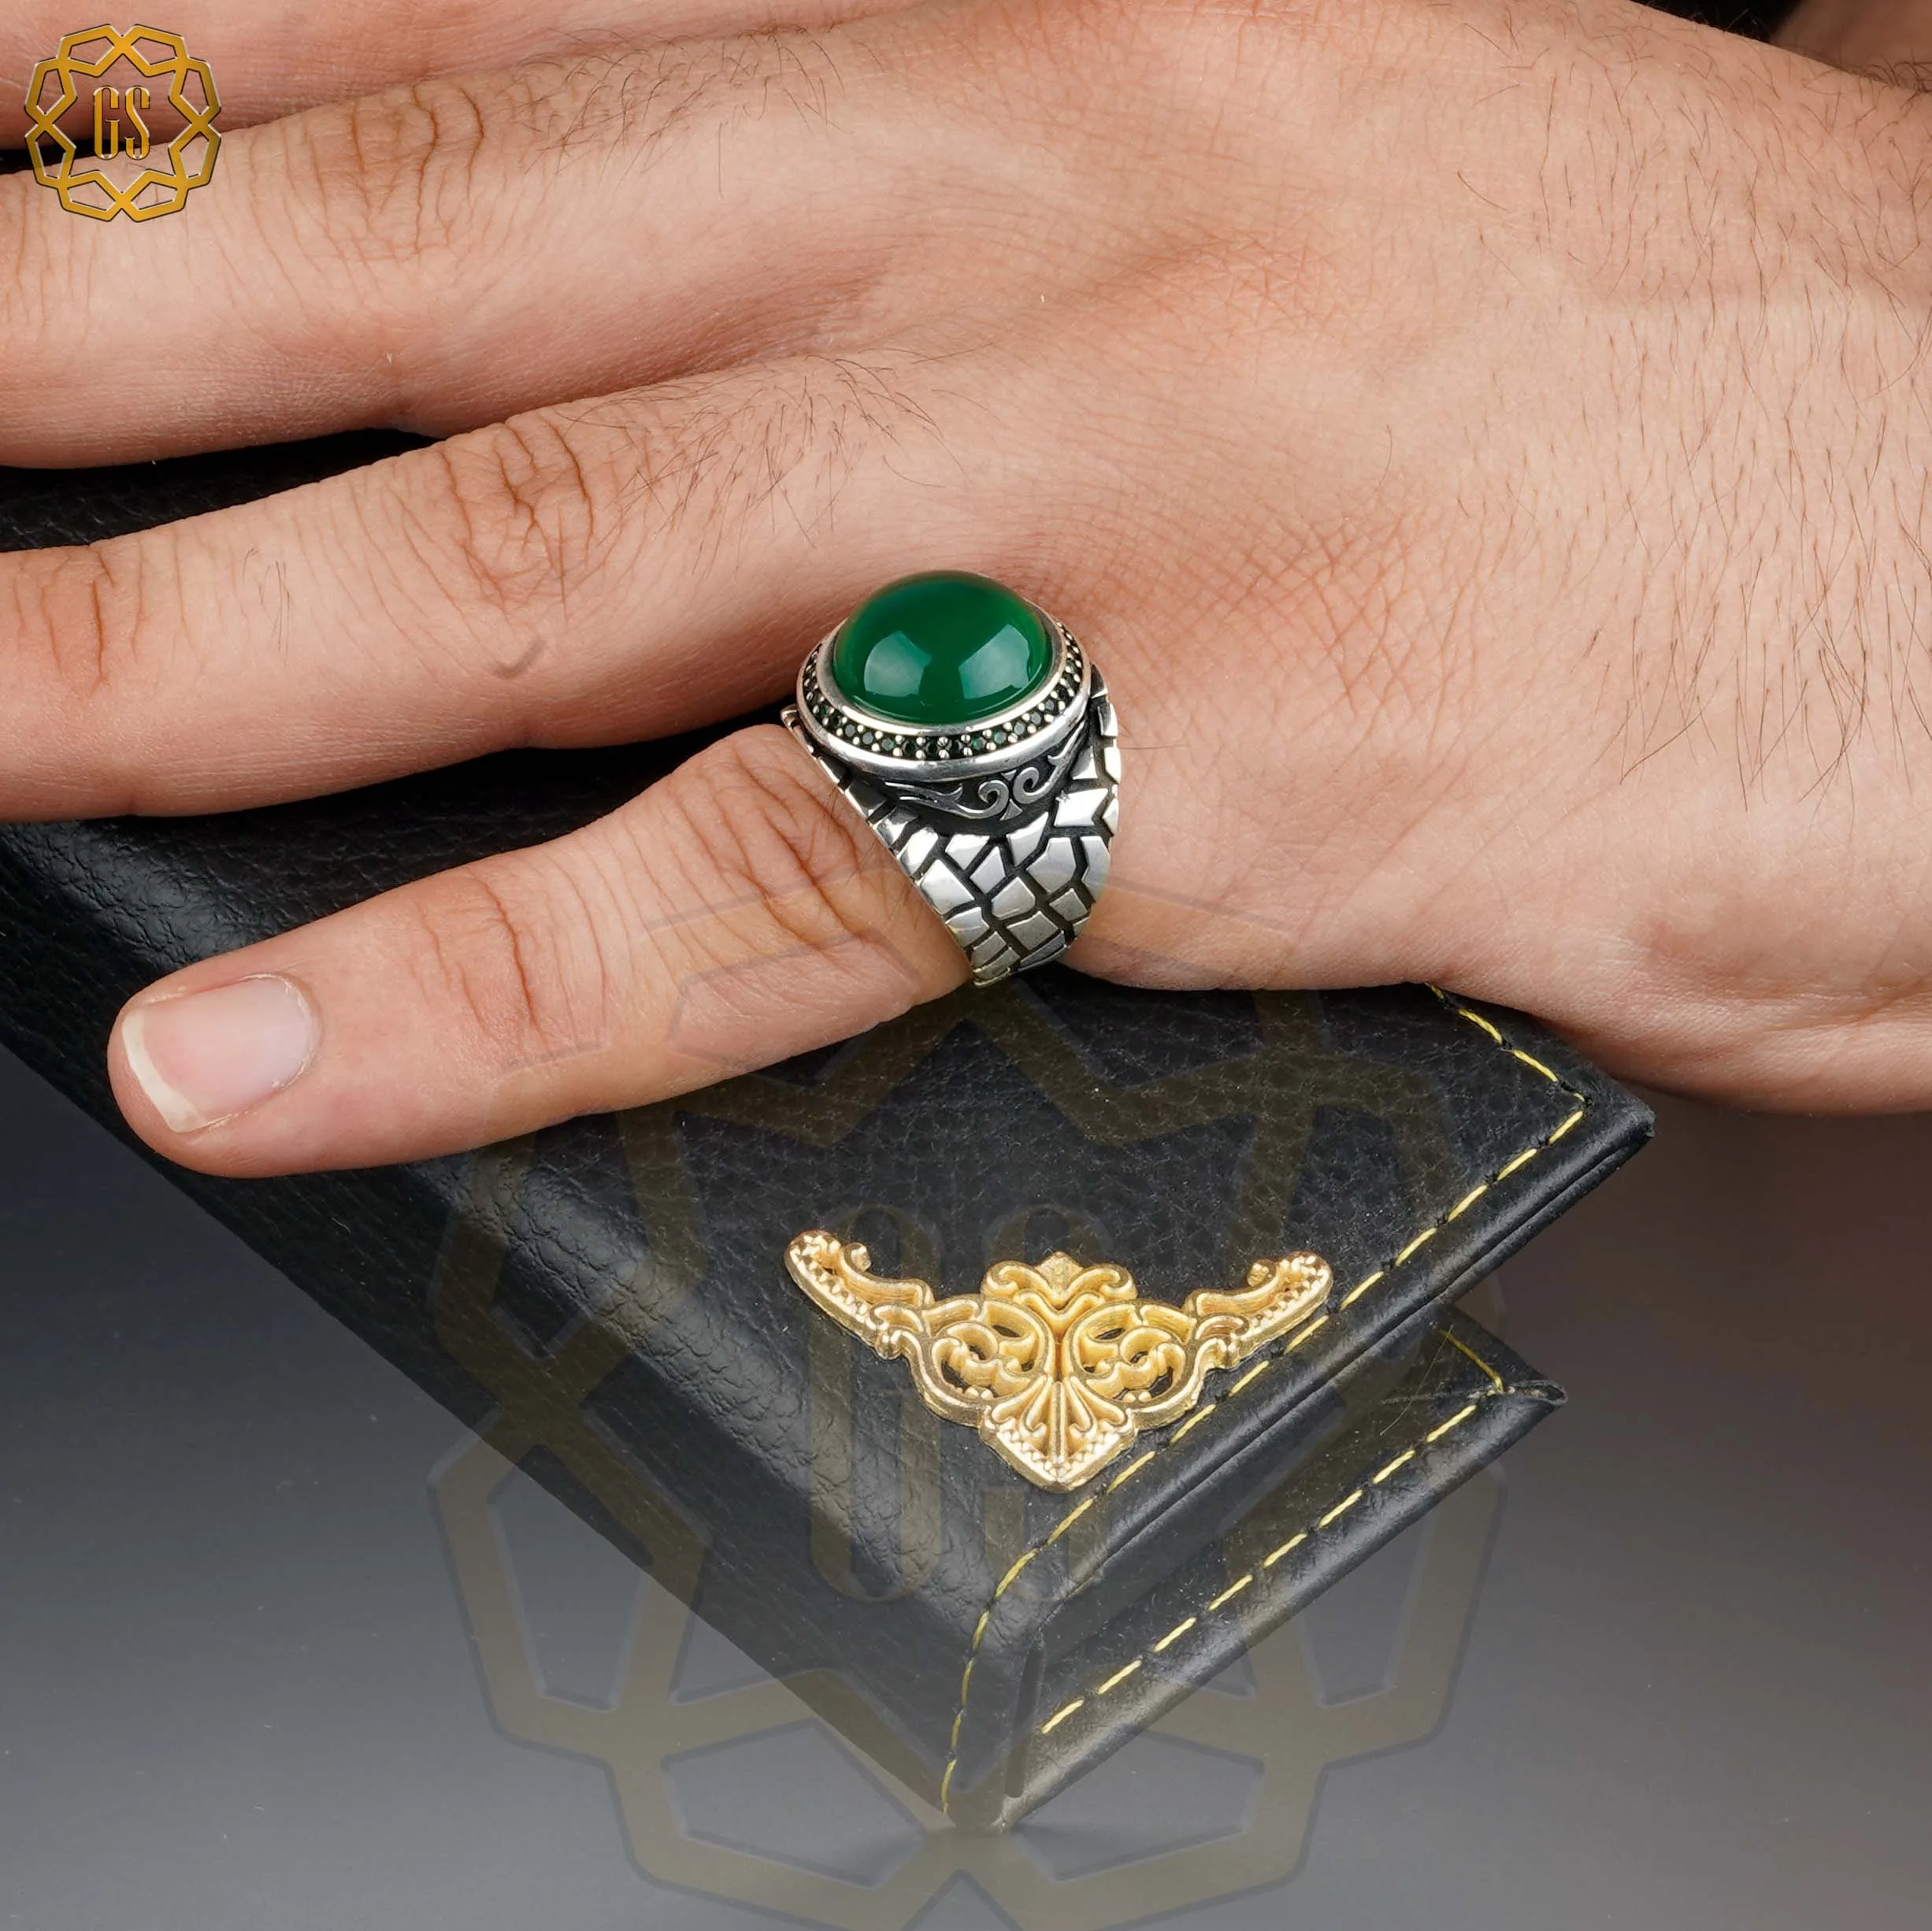 

Серебряное кольцо для мужчин 925 Сделано в Турции с камнем (циркон, агат, оникс) .. Гарантированное высокое качество .. Турецкие украшения